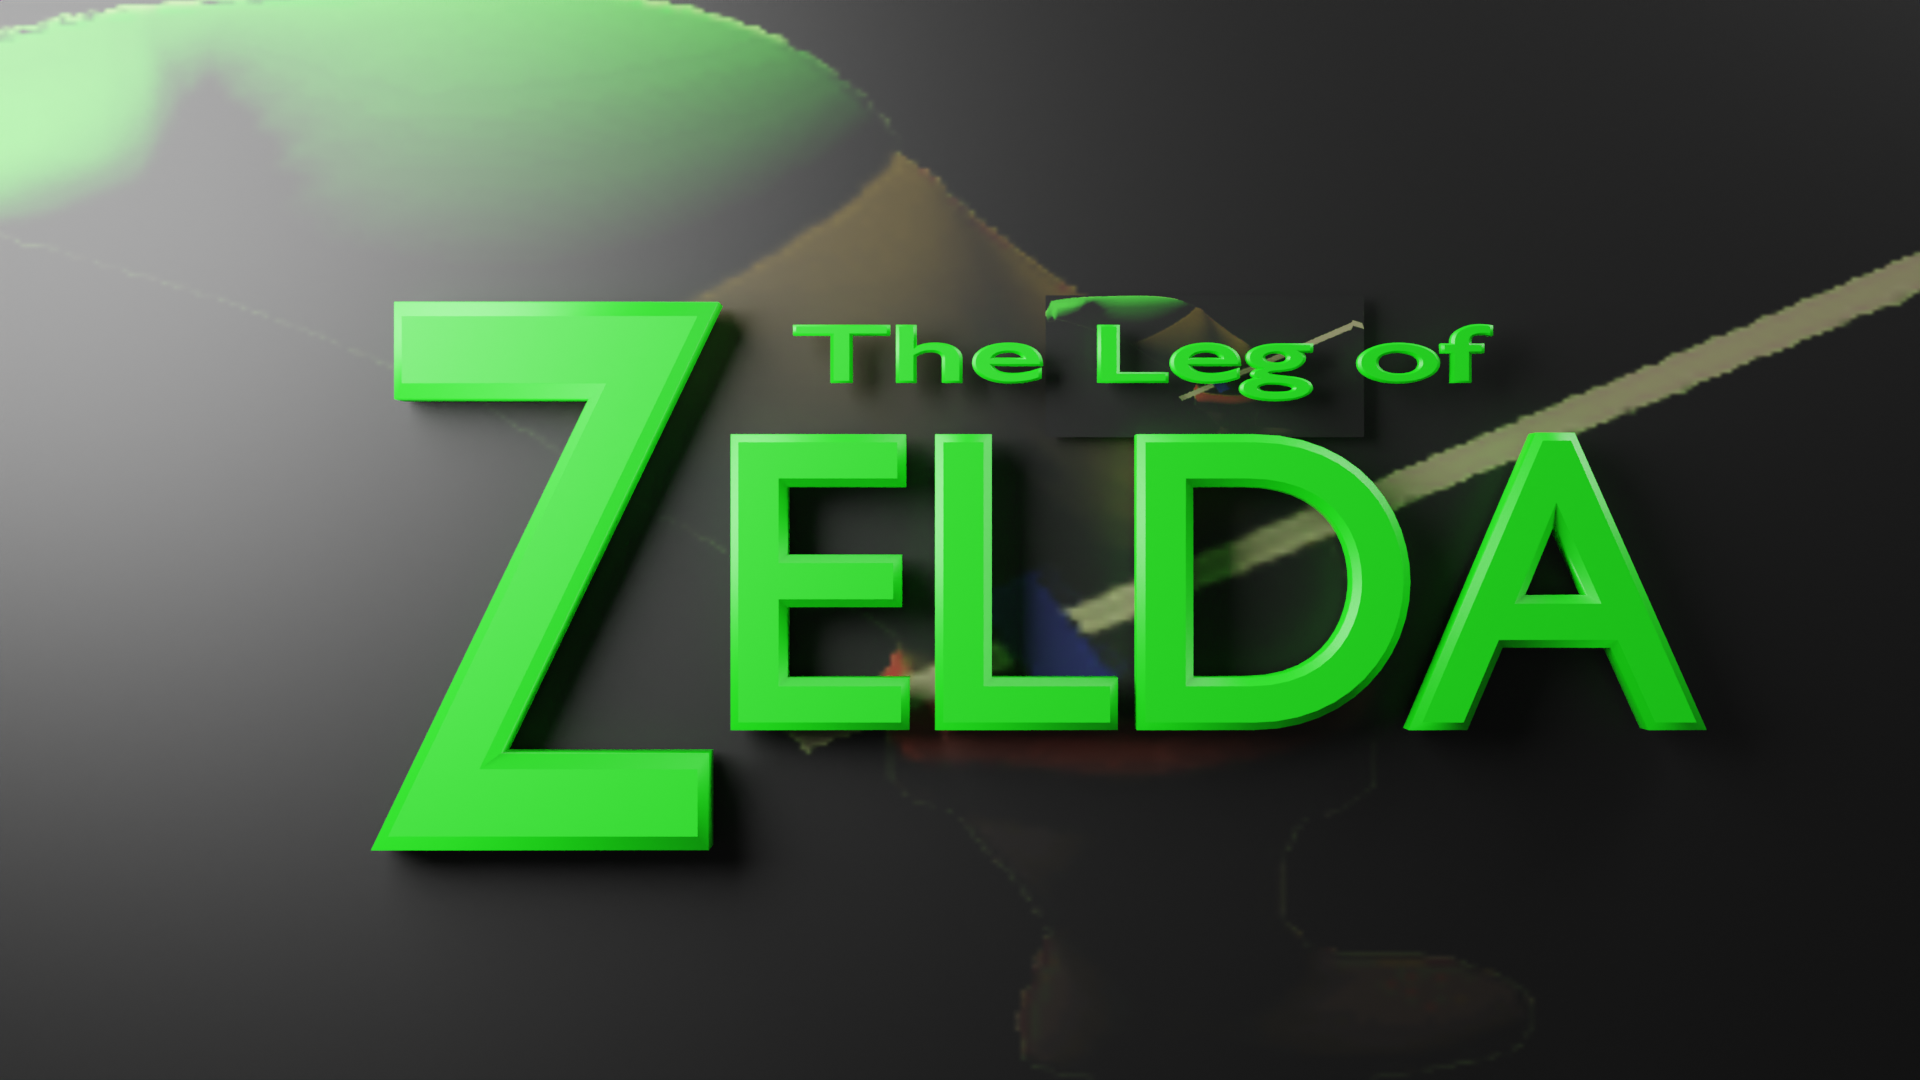 The Leg of Zelda